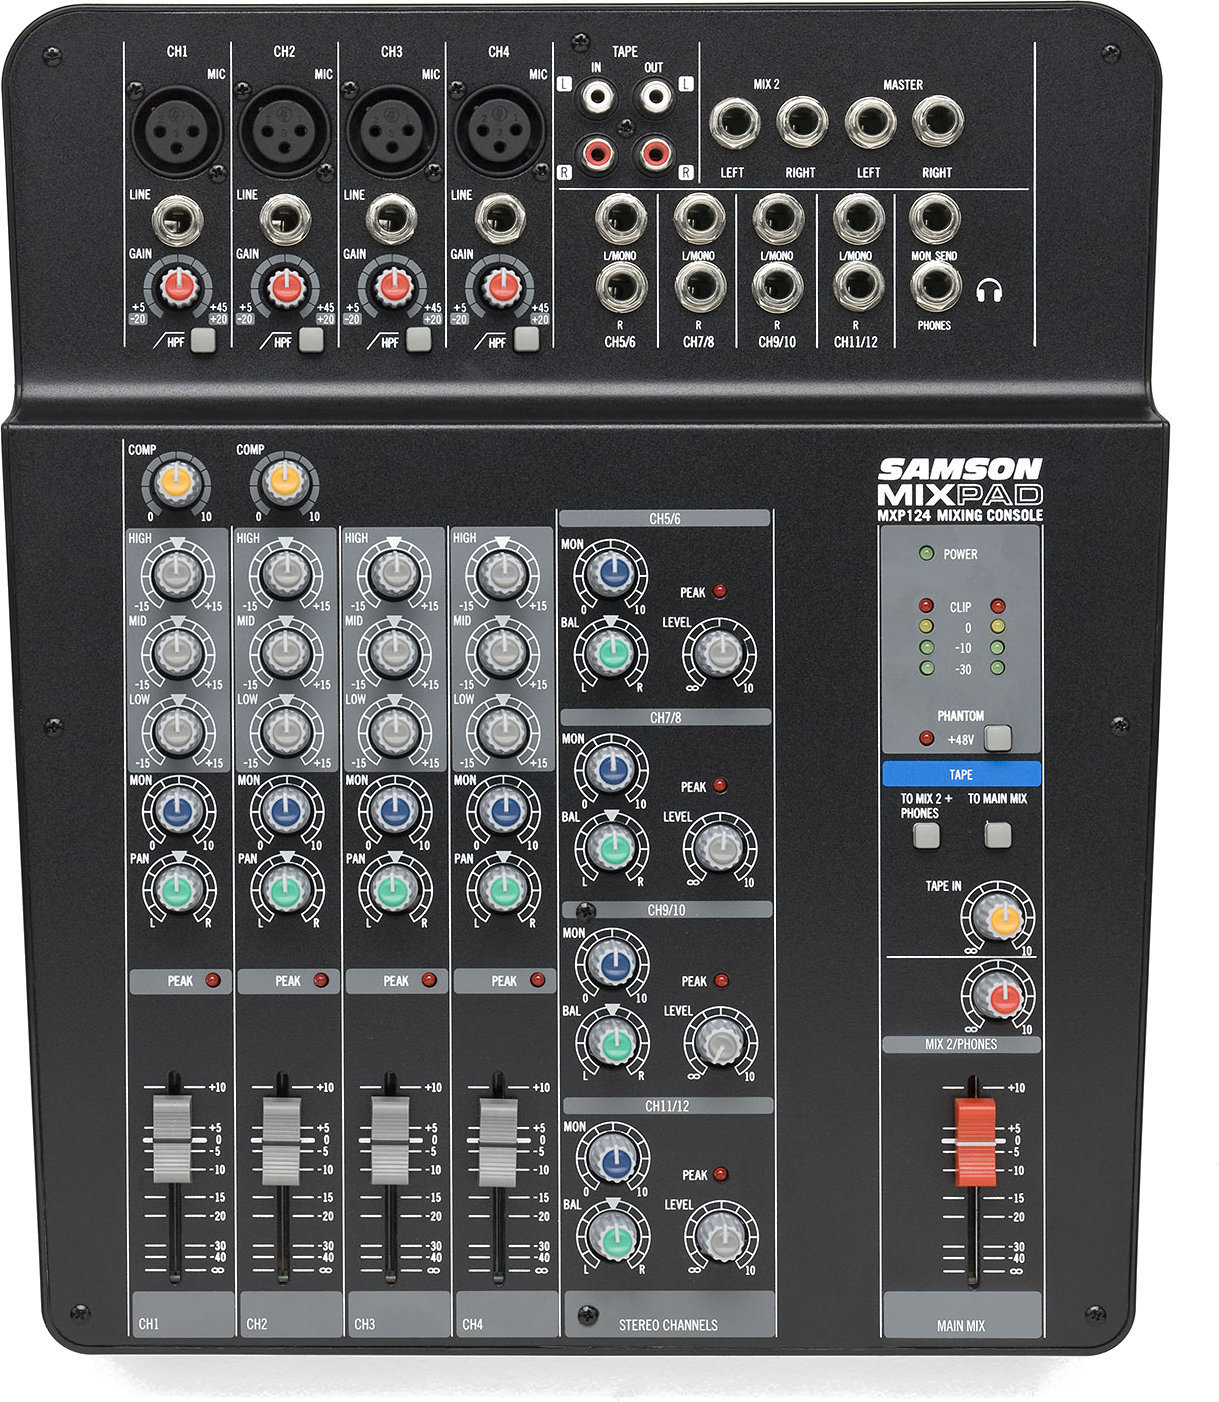 Analogni mix pult Samson MXP124 MixPad